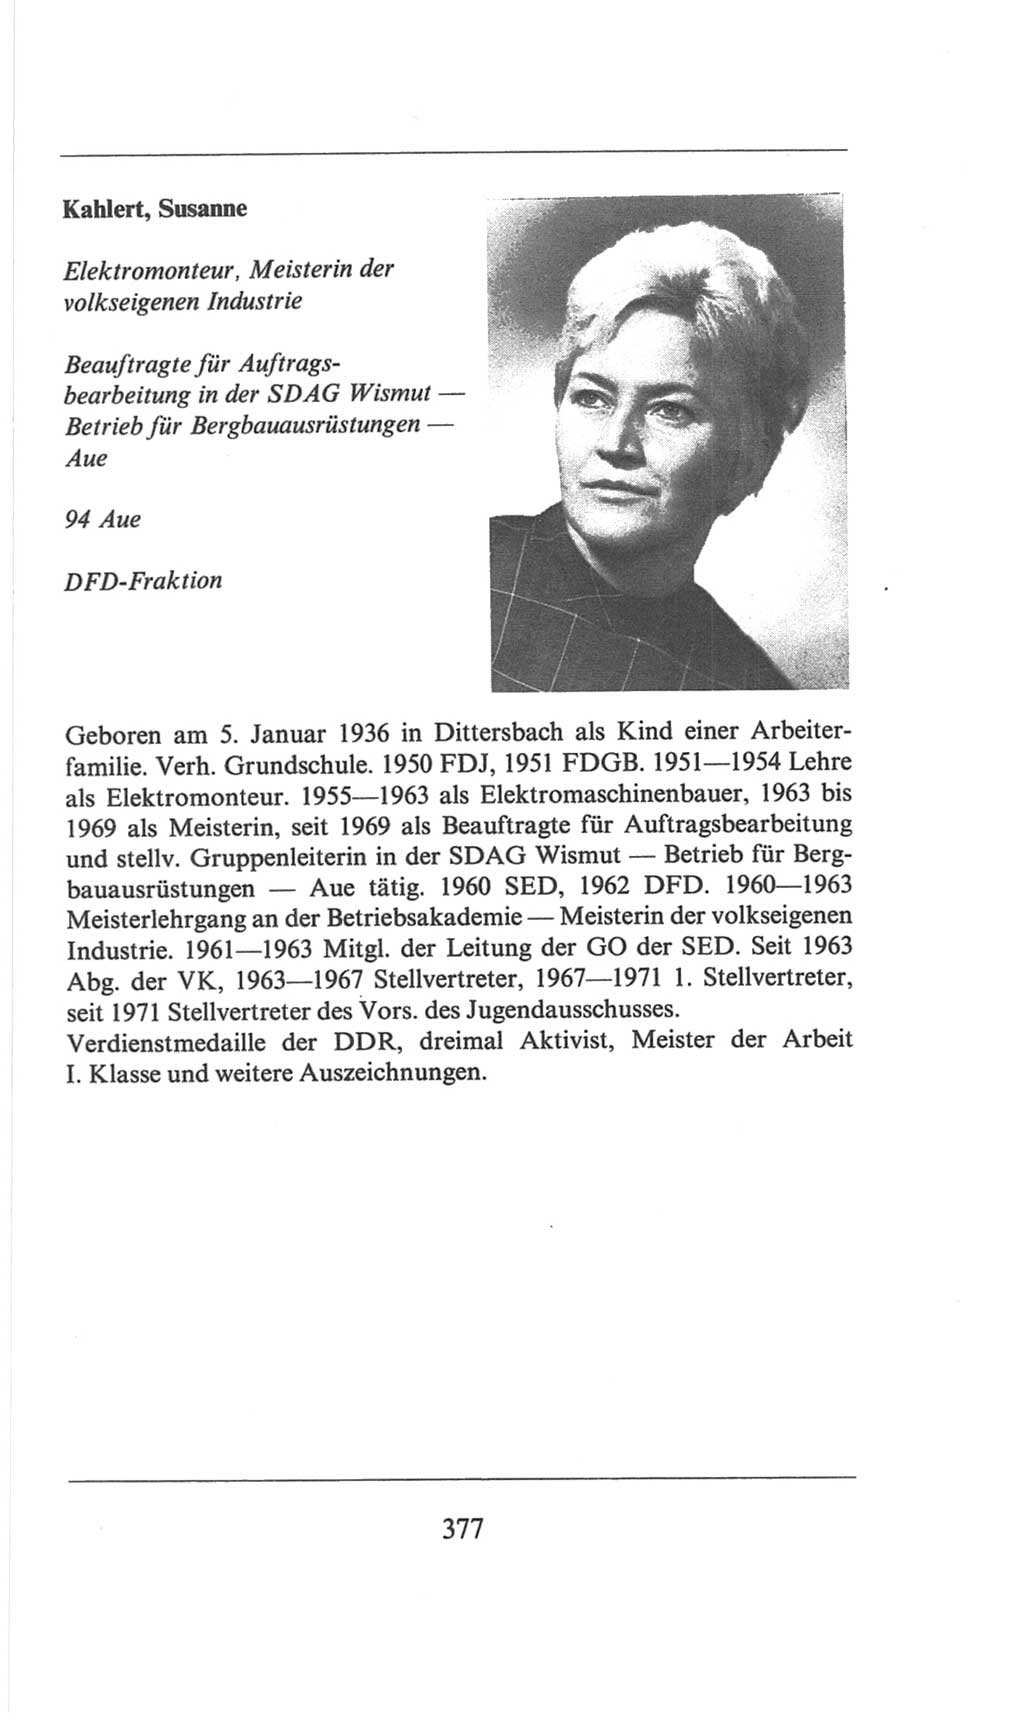 Volkskammer (VK) der Deutschen Demokratischen Republik (DDR), 6. Wahlperiode 1971-1976, Seite 377 (VK. DDR 6. WP. 1971-1976, S. 377)